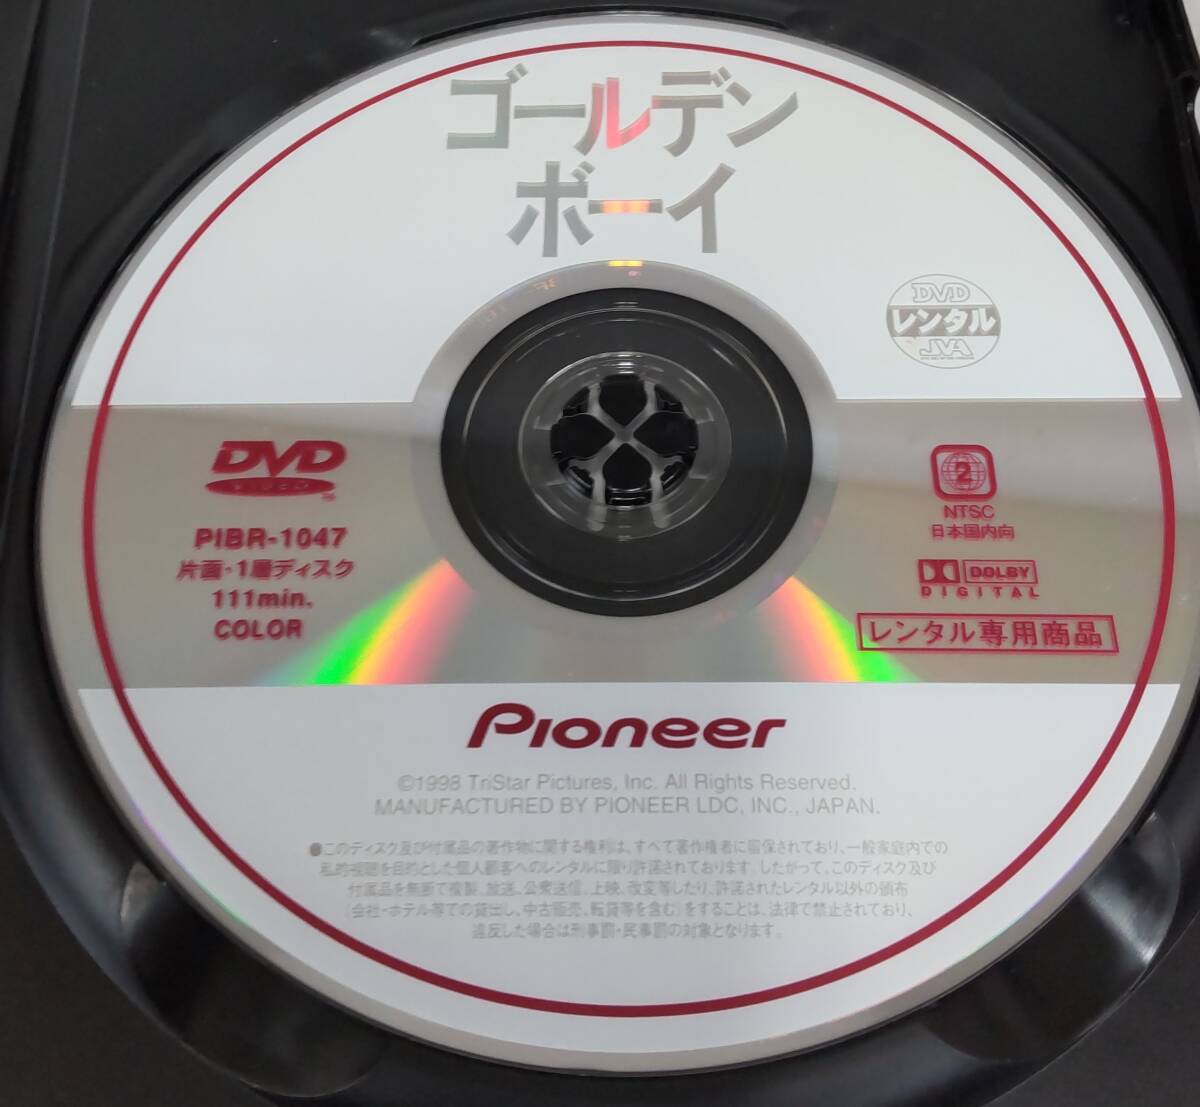 i2-3-3 золотой Boy ( западное кино )PIBR-1047 в аренду выше б/у DVD